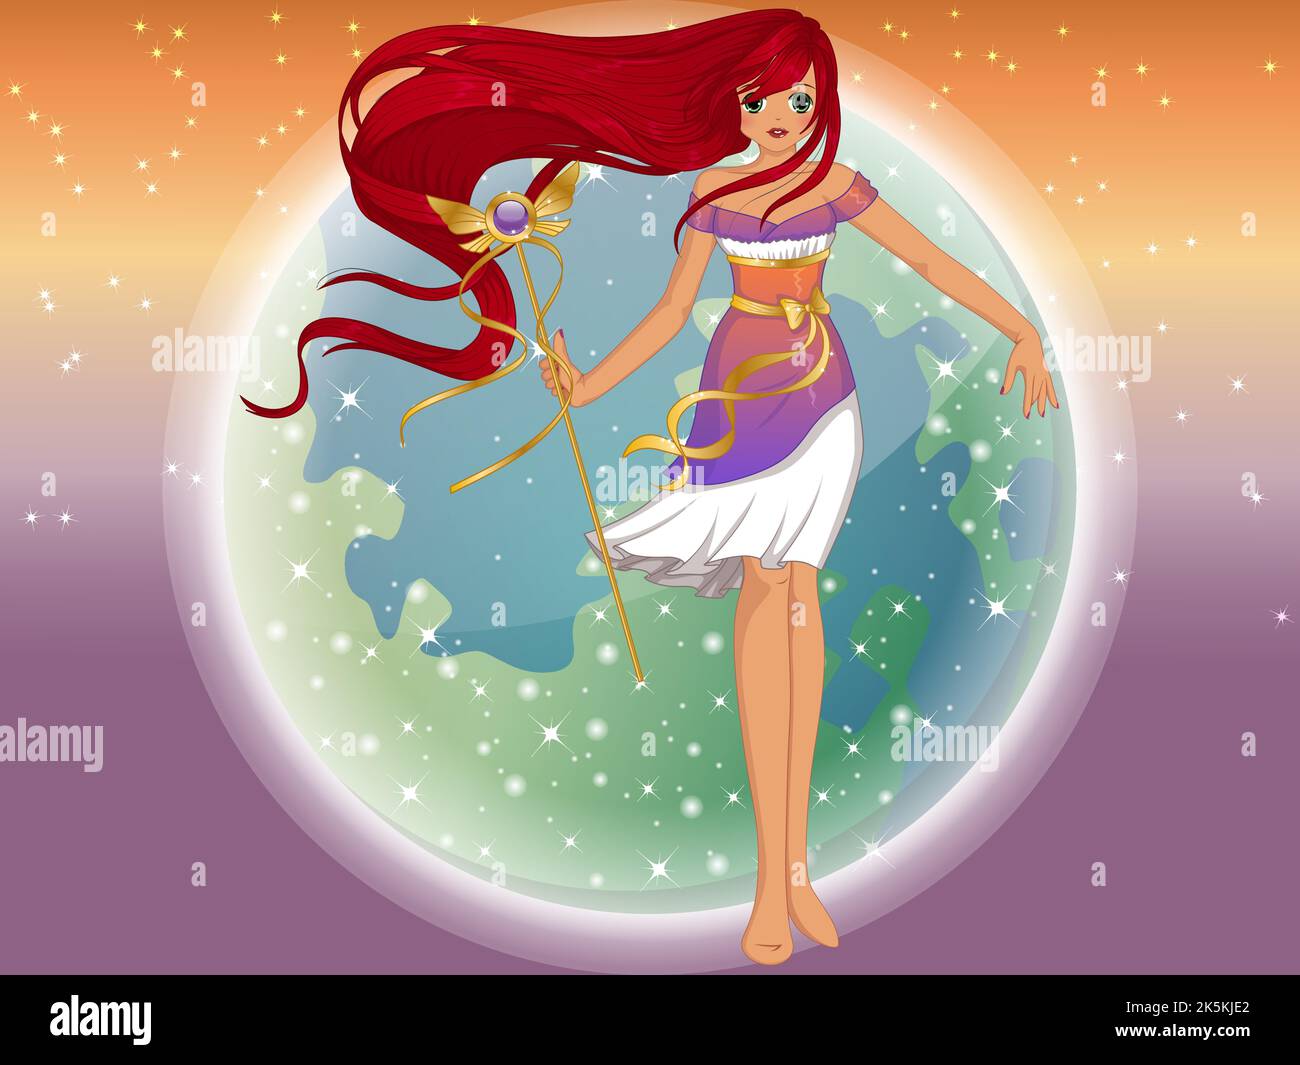 FANTASY Manga style princesse avec de longs cheveux rouges sur un fond de planète Hazy. Illustration vectorielle Illustration de Vecteur